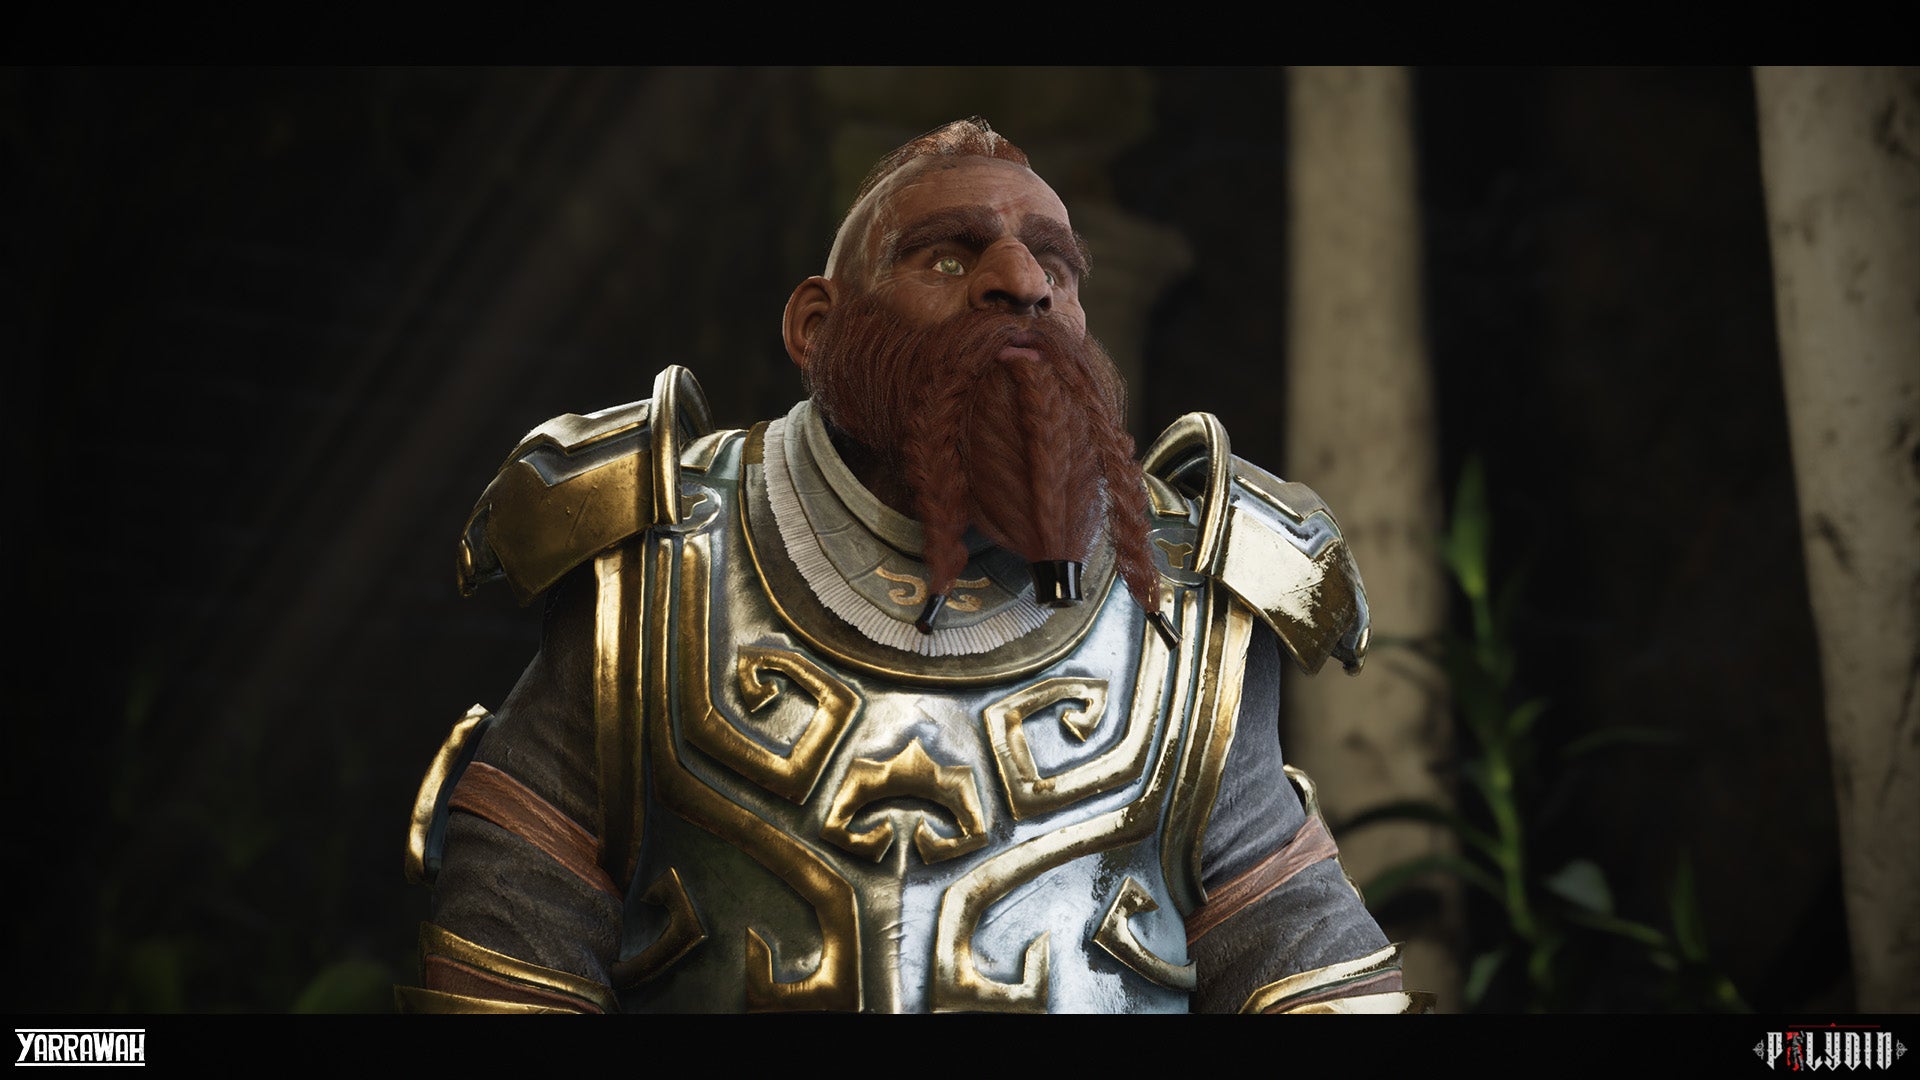 dwarf beard styles